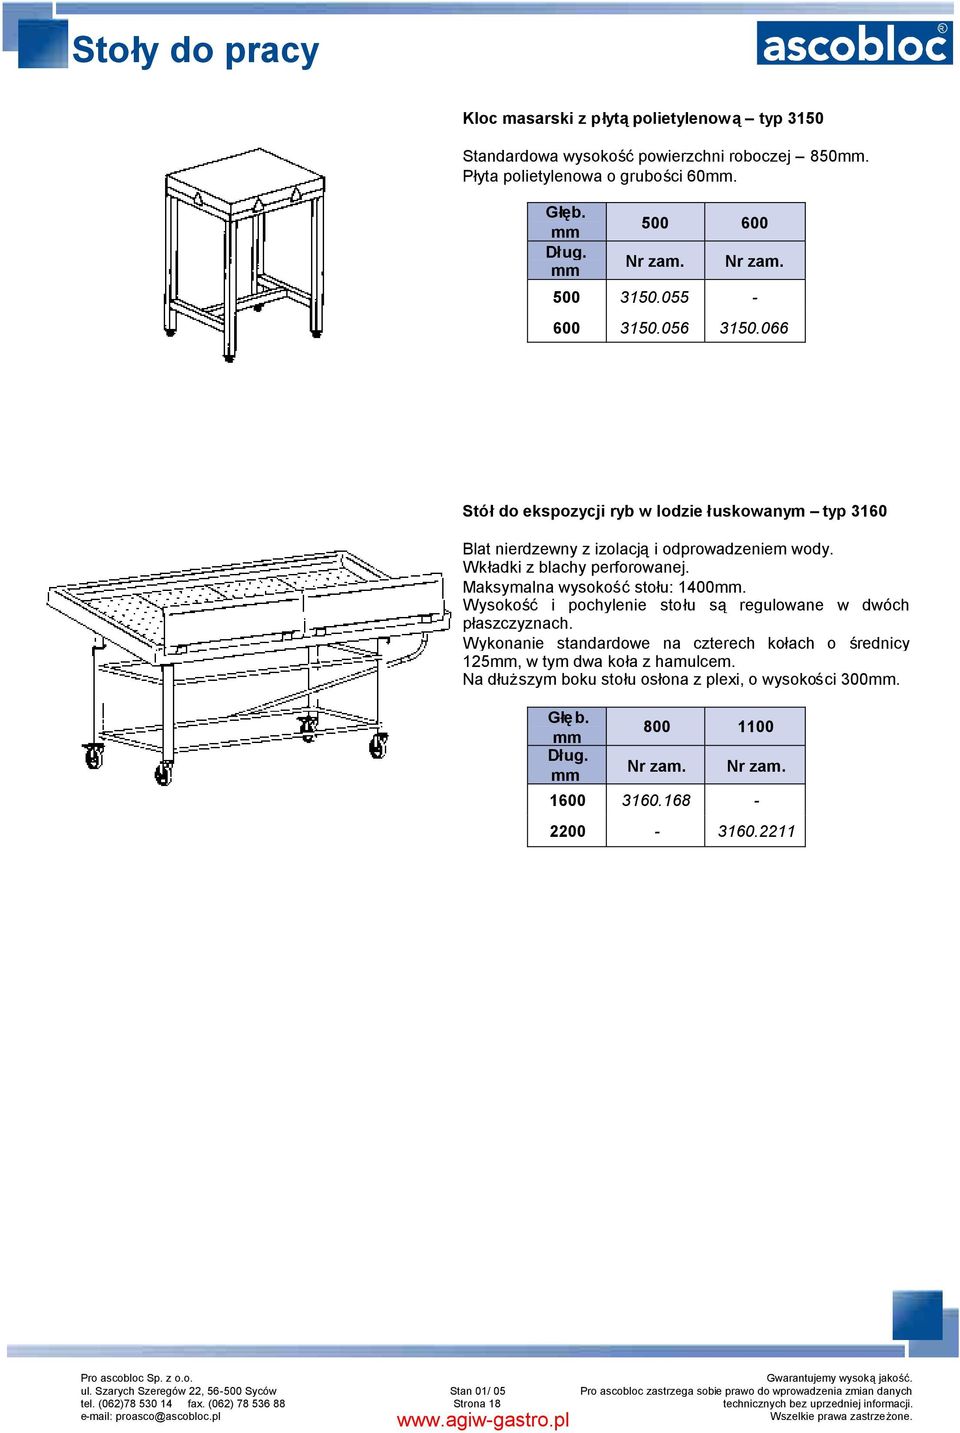 Wkładki z blachy perforowanej. Maksymalna wysokośćstołu: 1400. Wysokość i pochylenie stołu są regulowane w dwóch płaszczyznach.